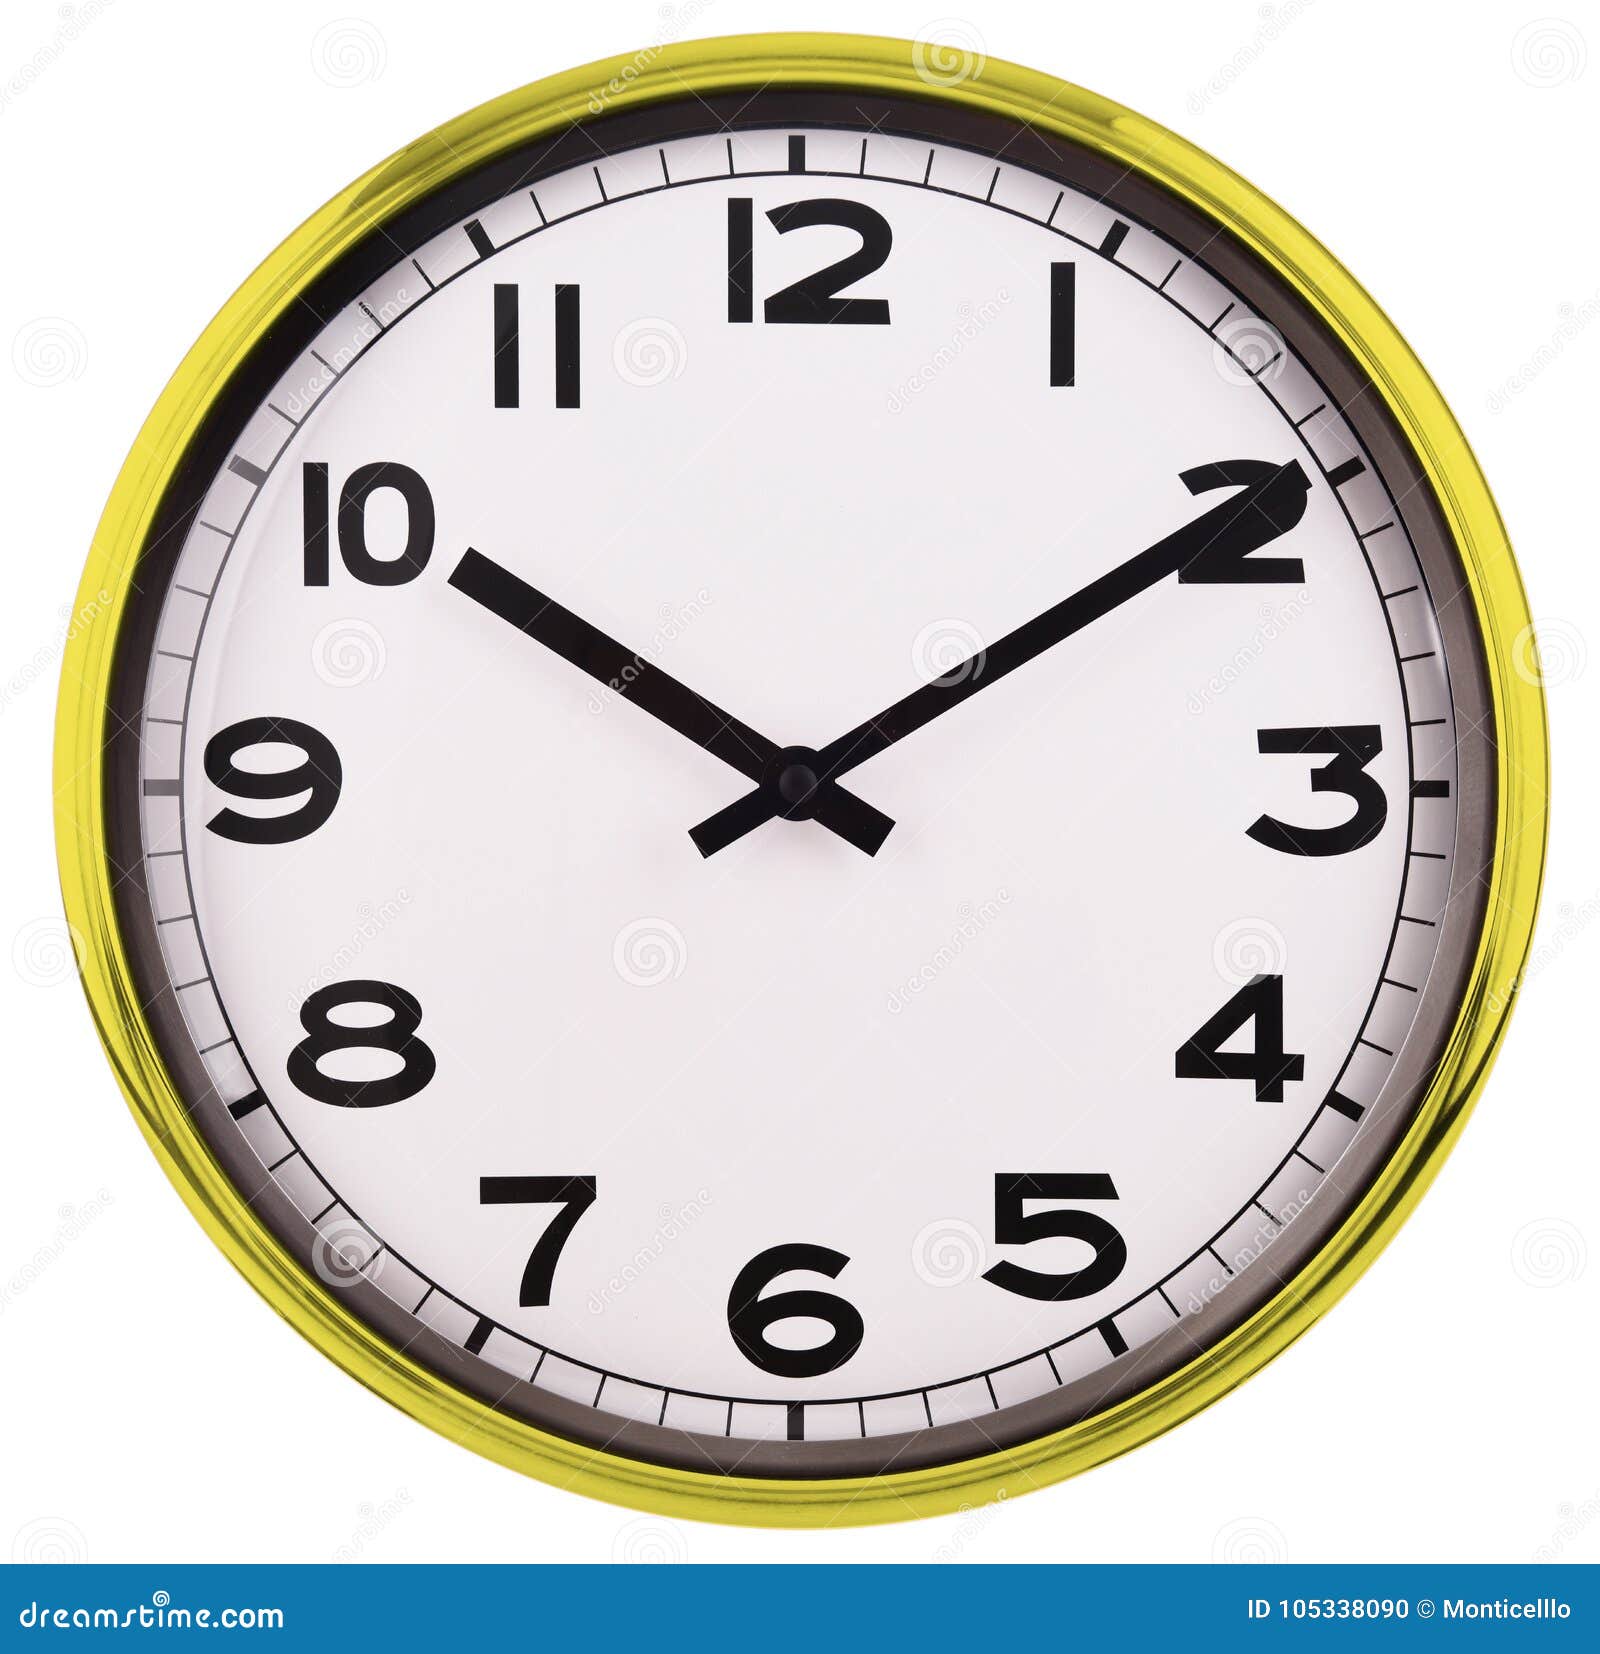 Знак часы 10 10. Часы десять минут. Десять минут на часах. Часы 10. 10 Часов 10 минут.